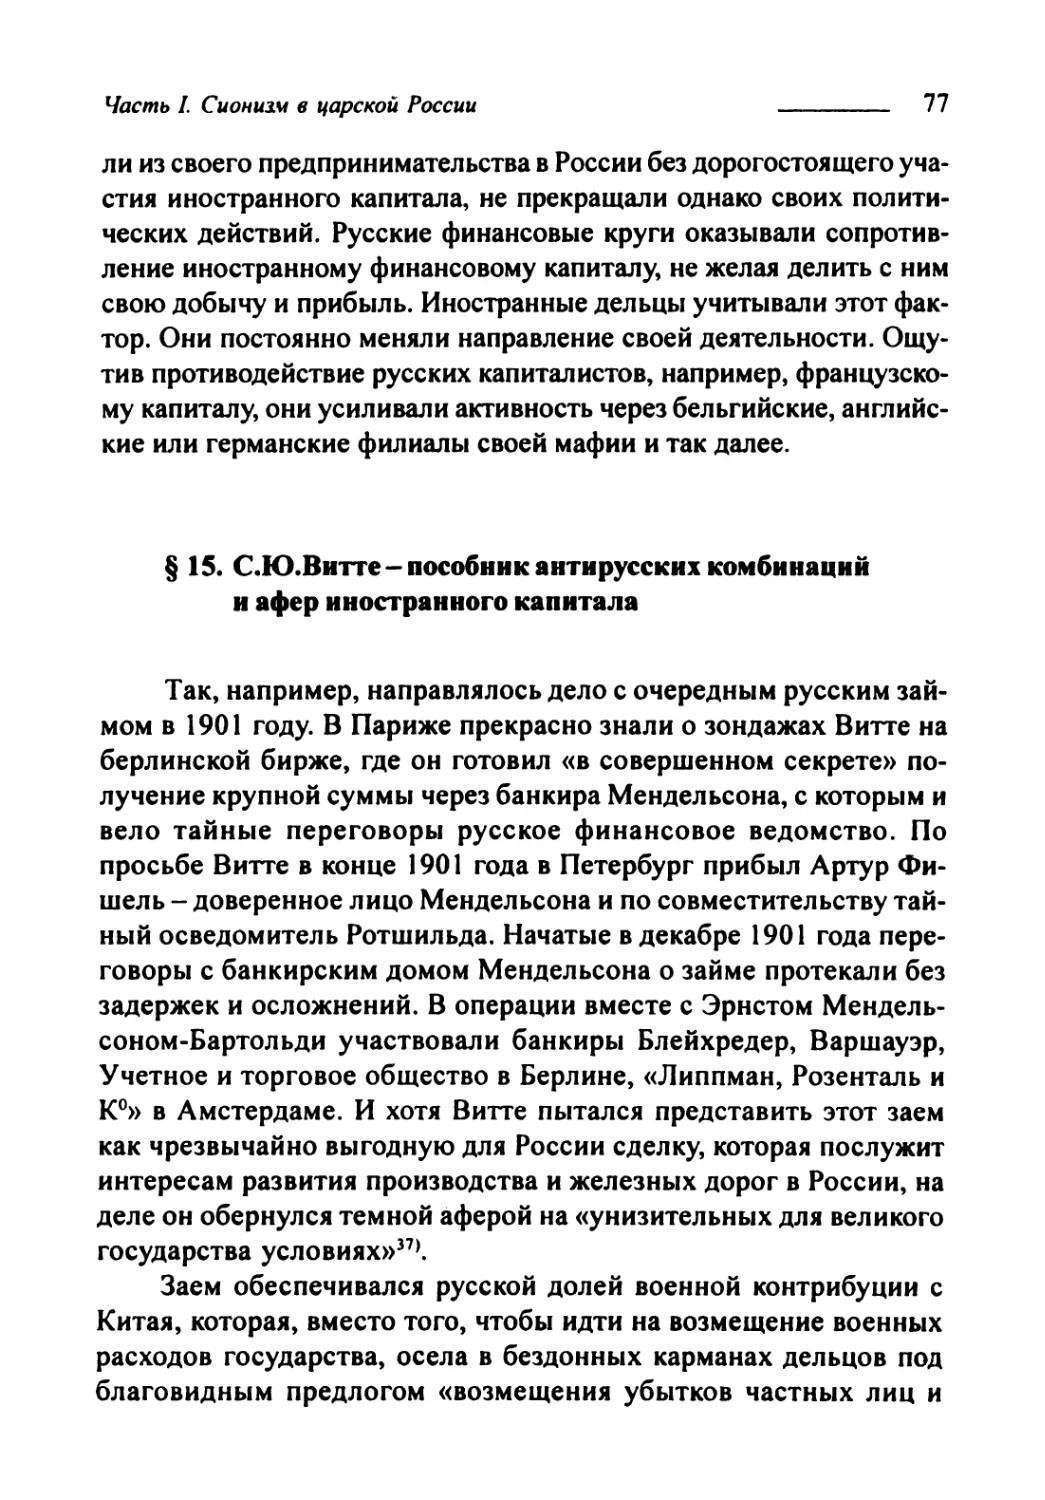 § 15. С.Ю. Витте — пособник антирусских комбинаций и афёр иностранного капитала